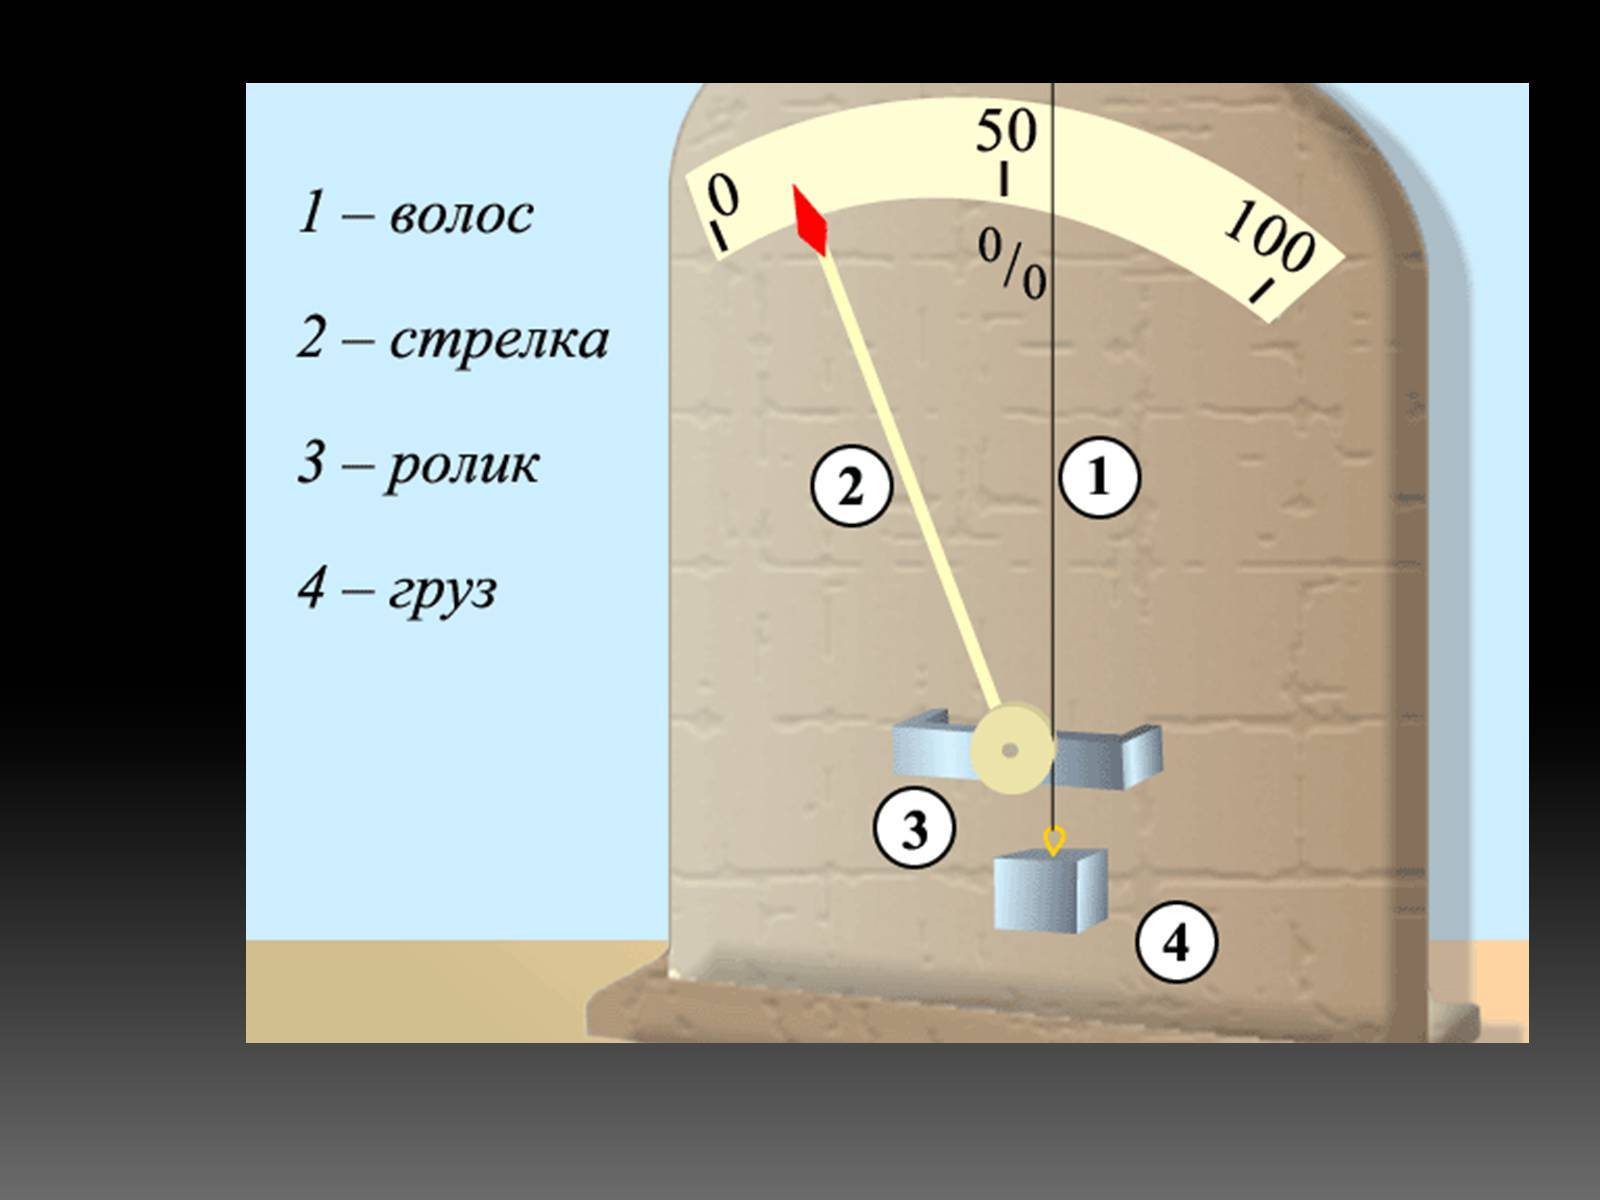 Измерение влажности воздуха в помещении – прибор и единицы измерения, формула кратко